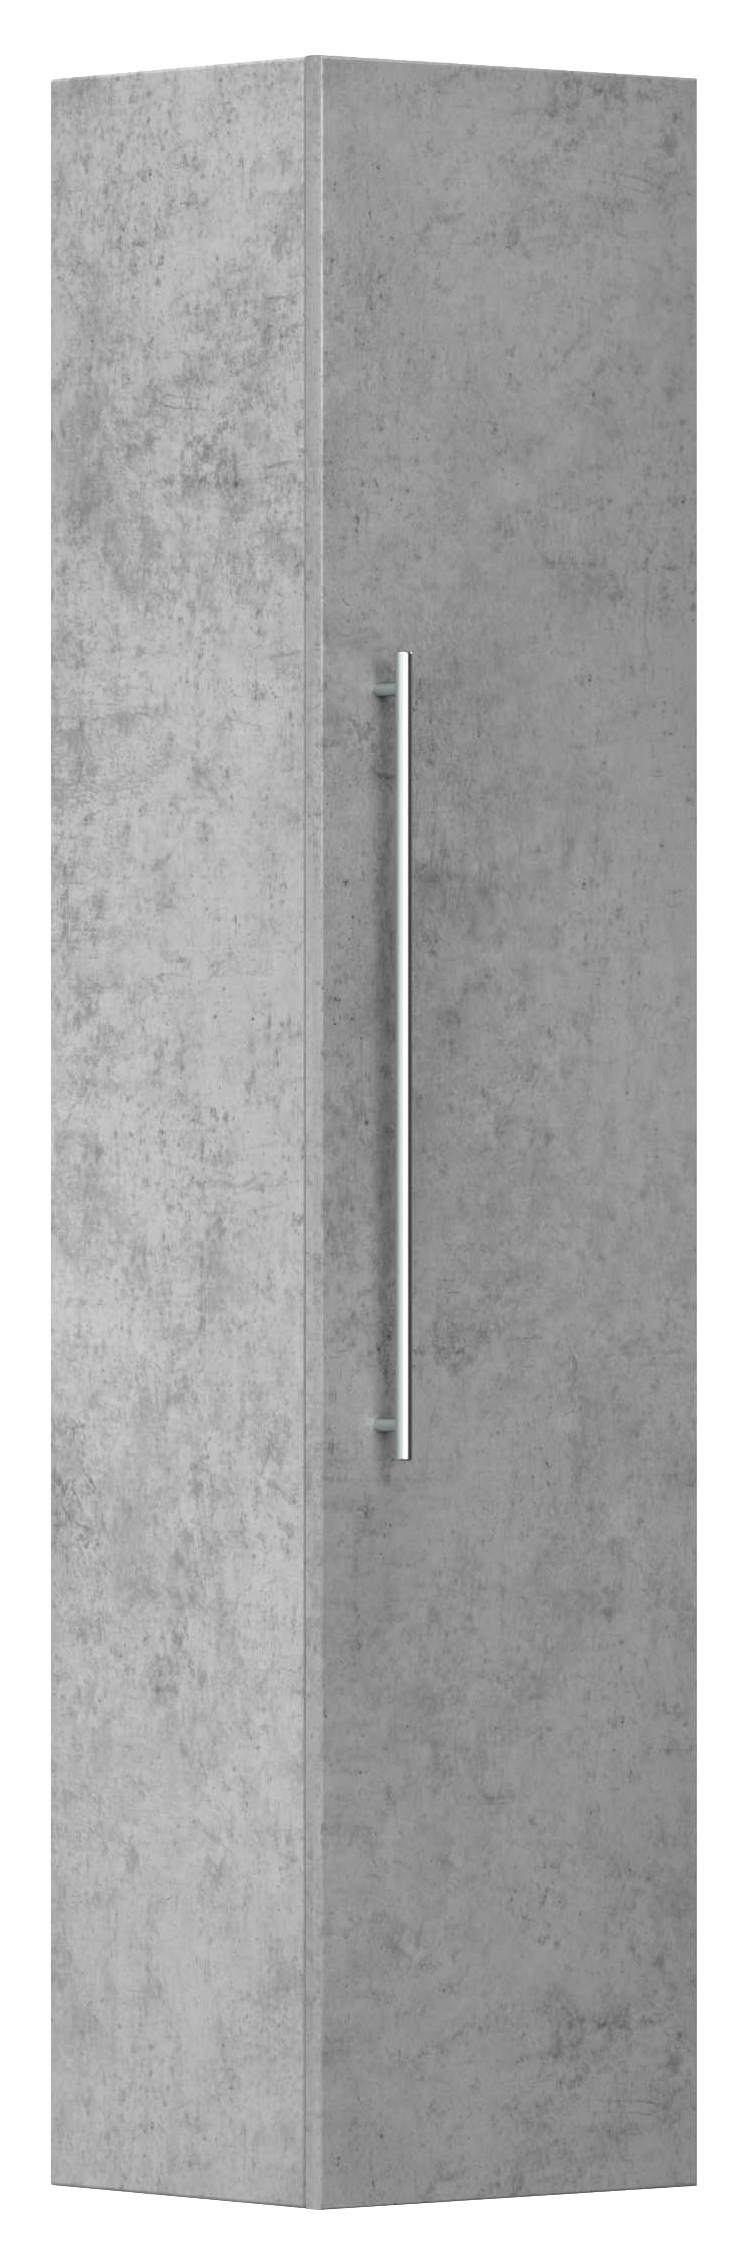 Badmöbelset Helios 4 tlg inkl Spiegelschrank, Hochschränke SoftClose beton